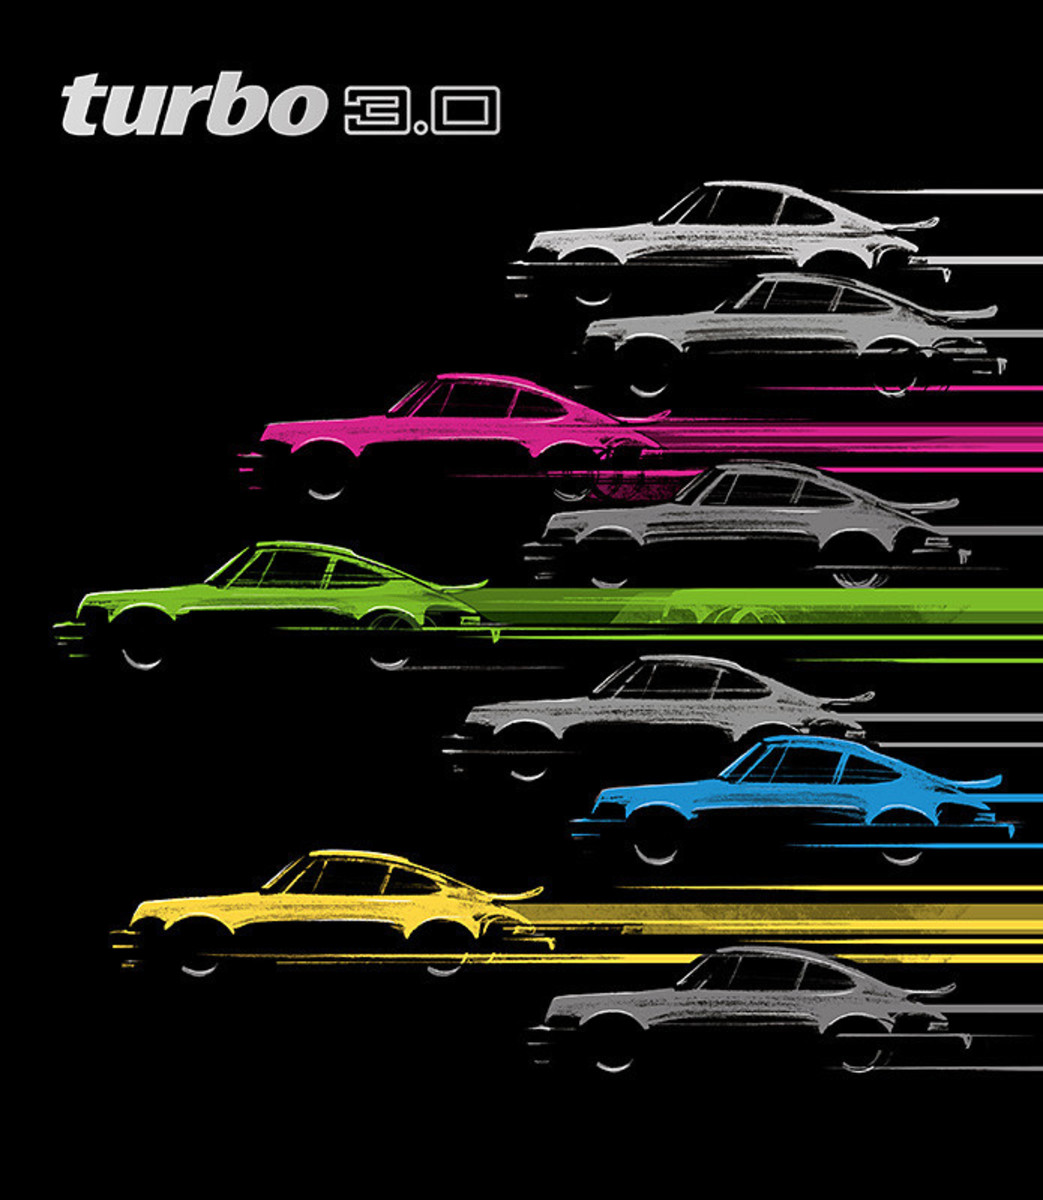 Turbo 3.0